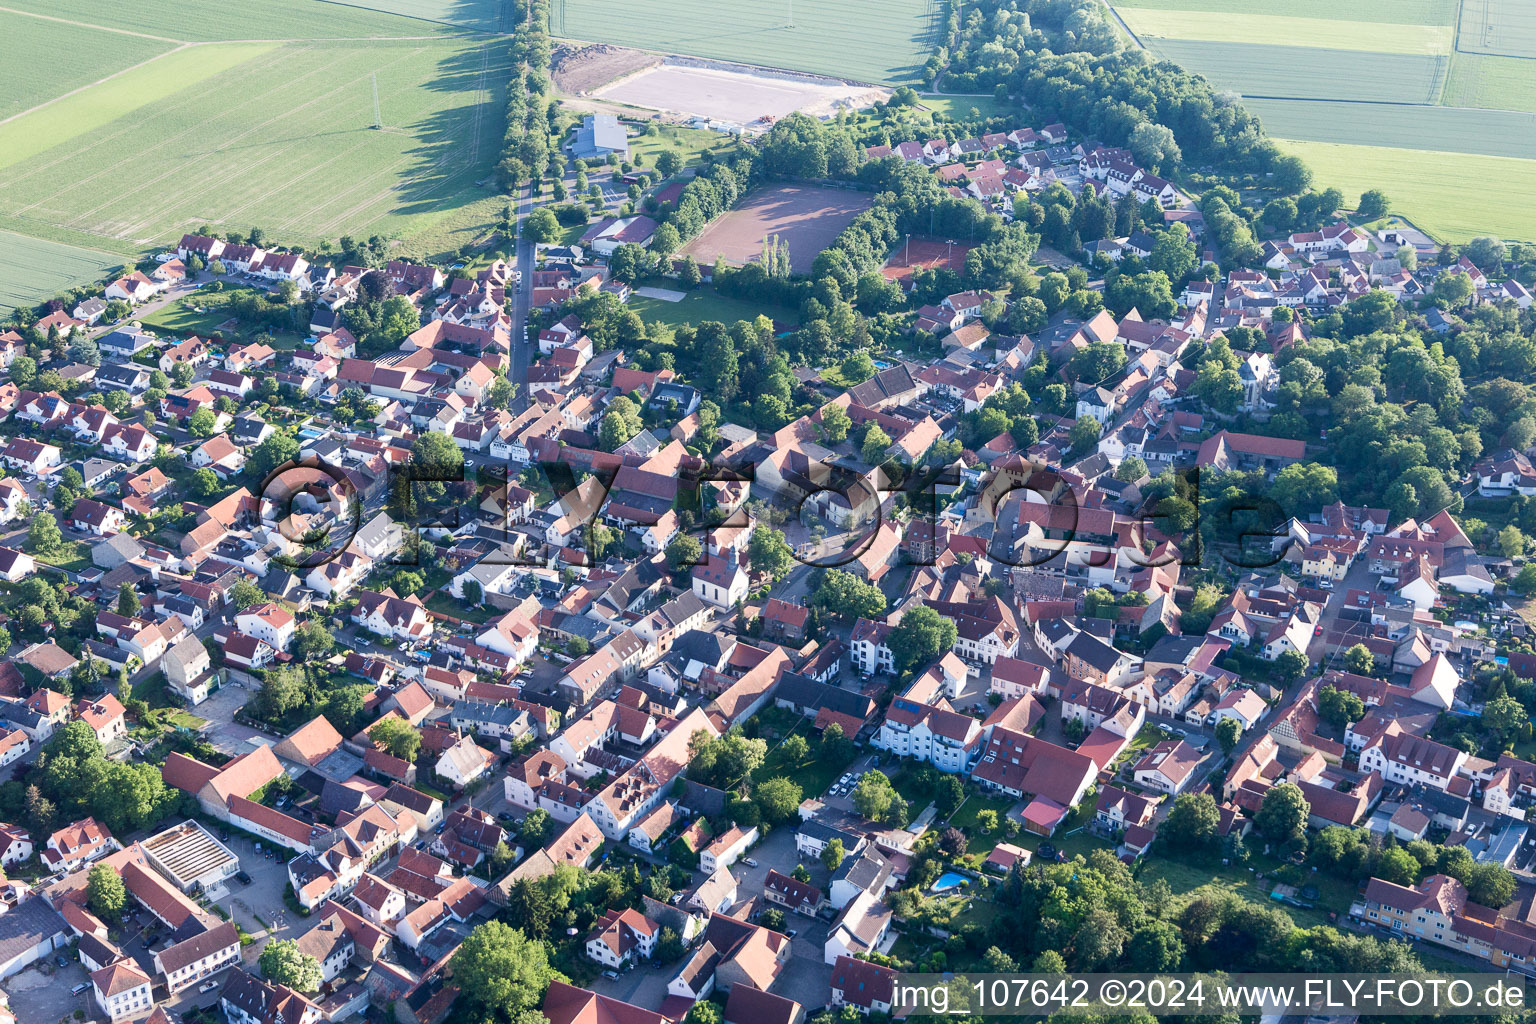 Undenheim im Bundesland Rheinland-Pfalz, Deutschland aus der Luft betrachtet